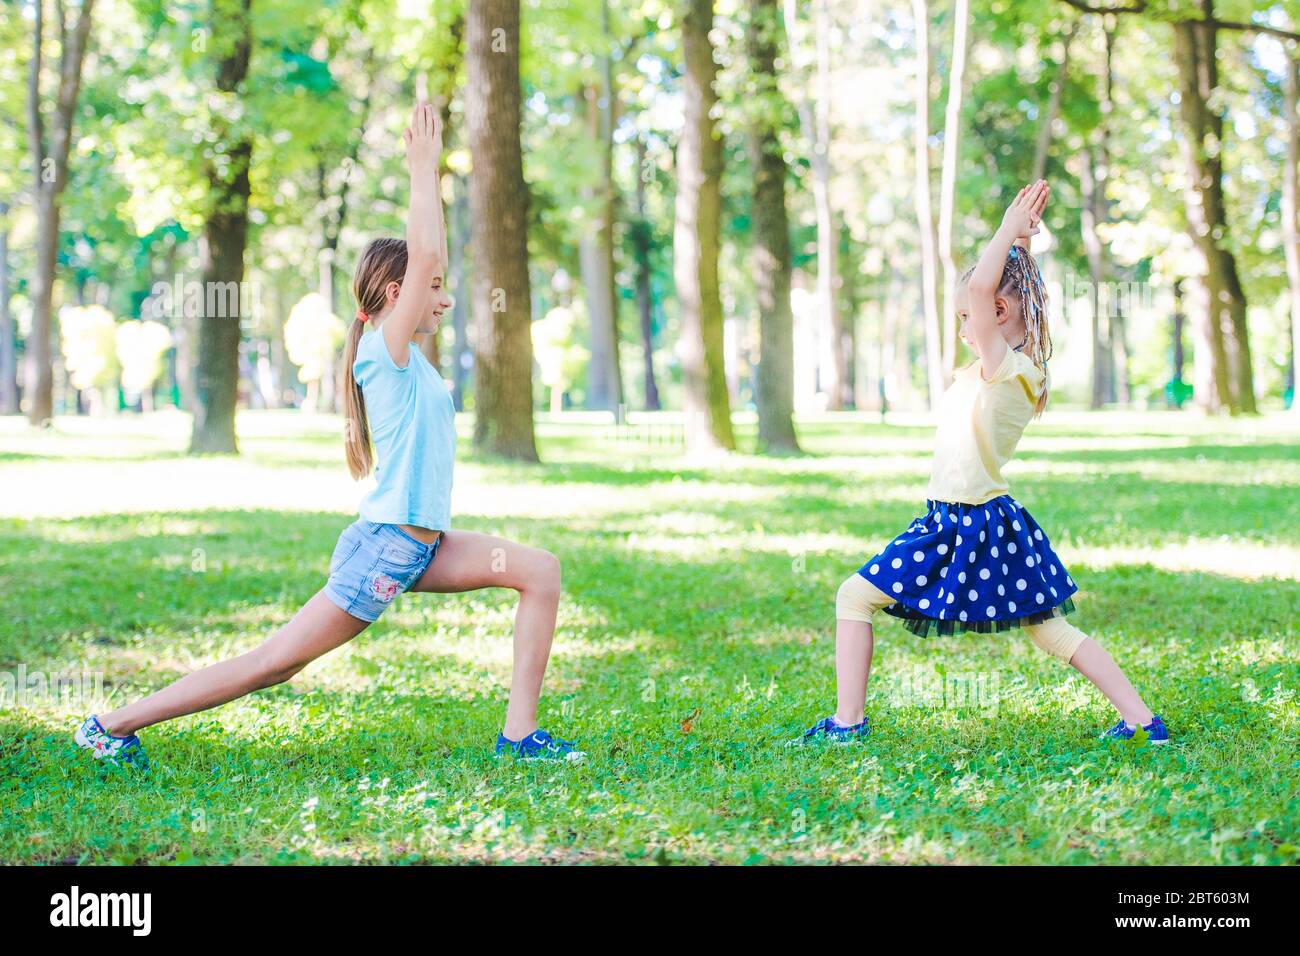 Kleine Mädchen trainieren zusammen im Sunshine Park Stockfoto